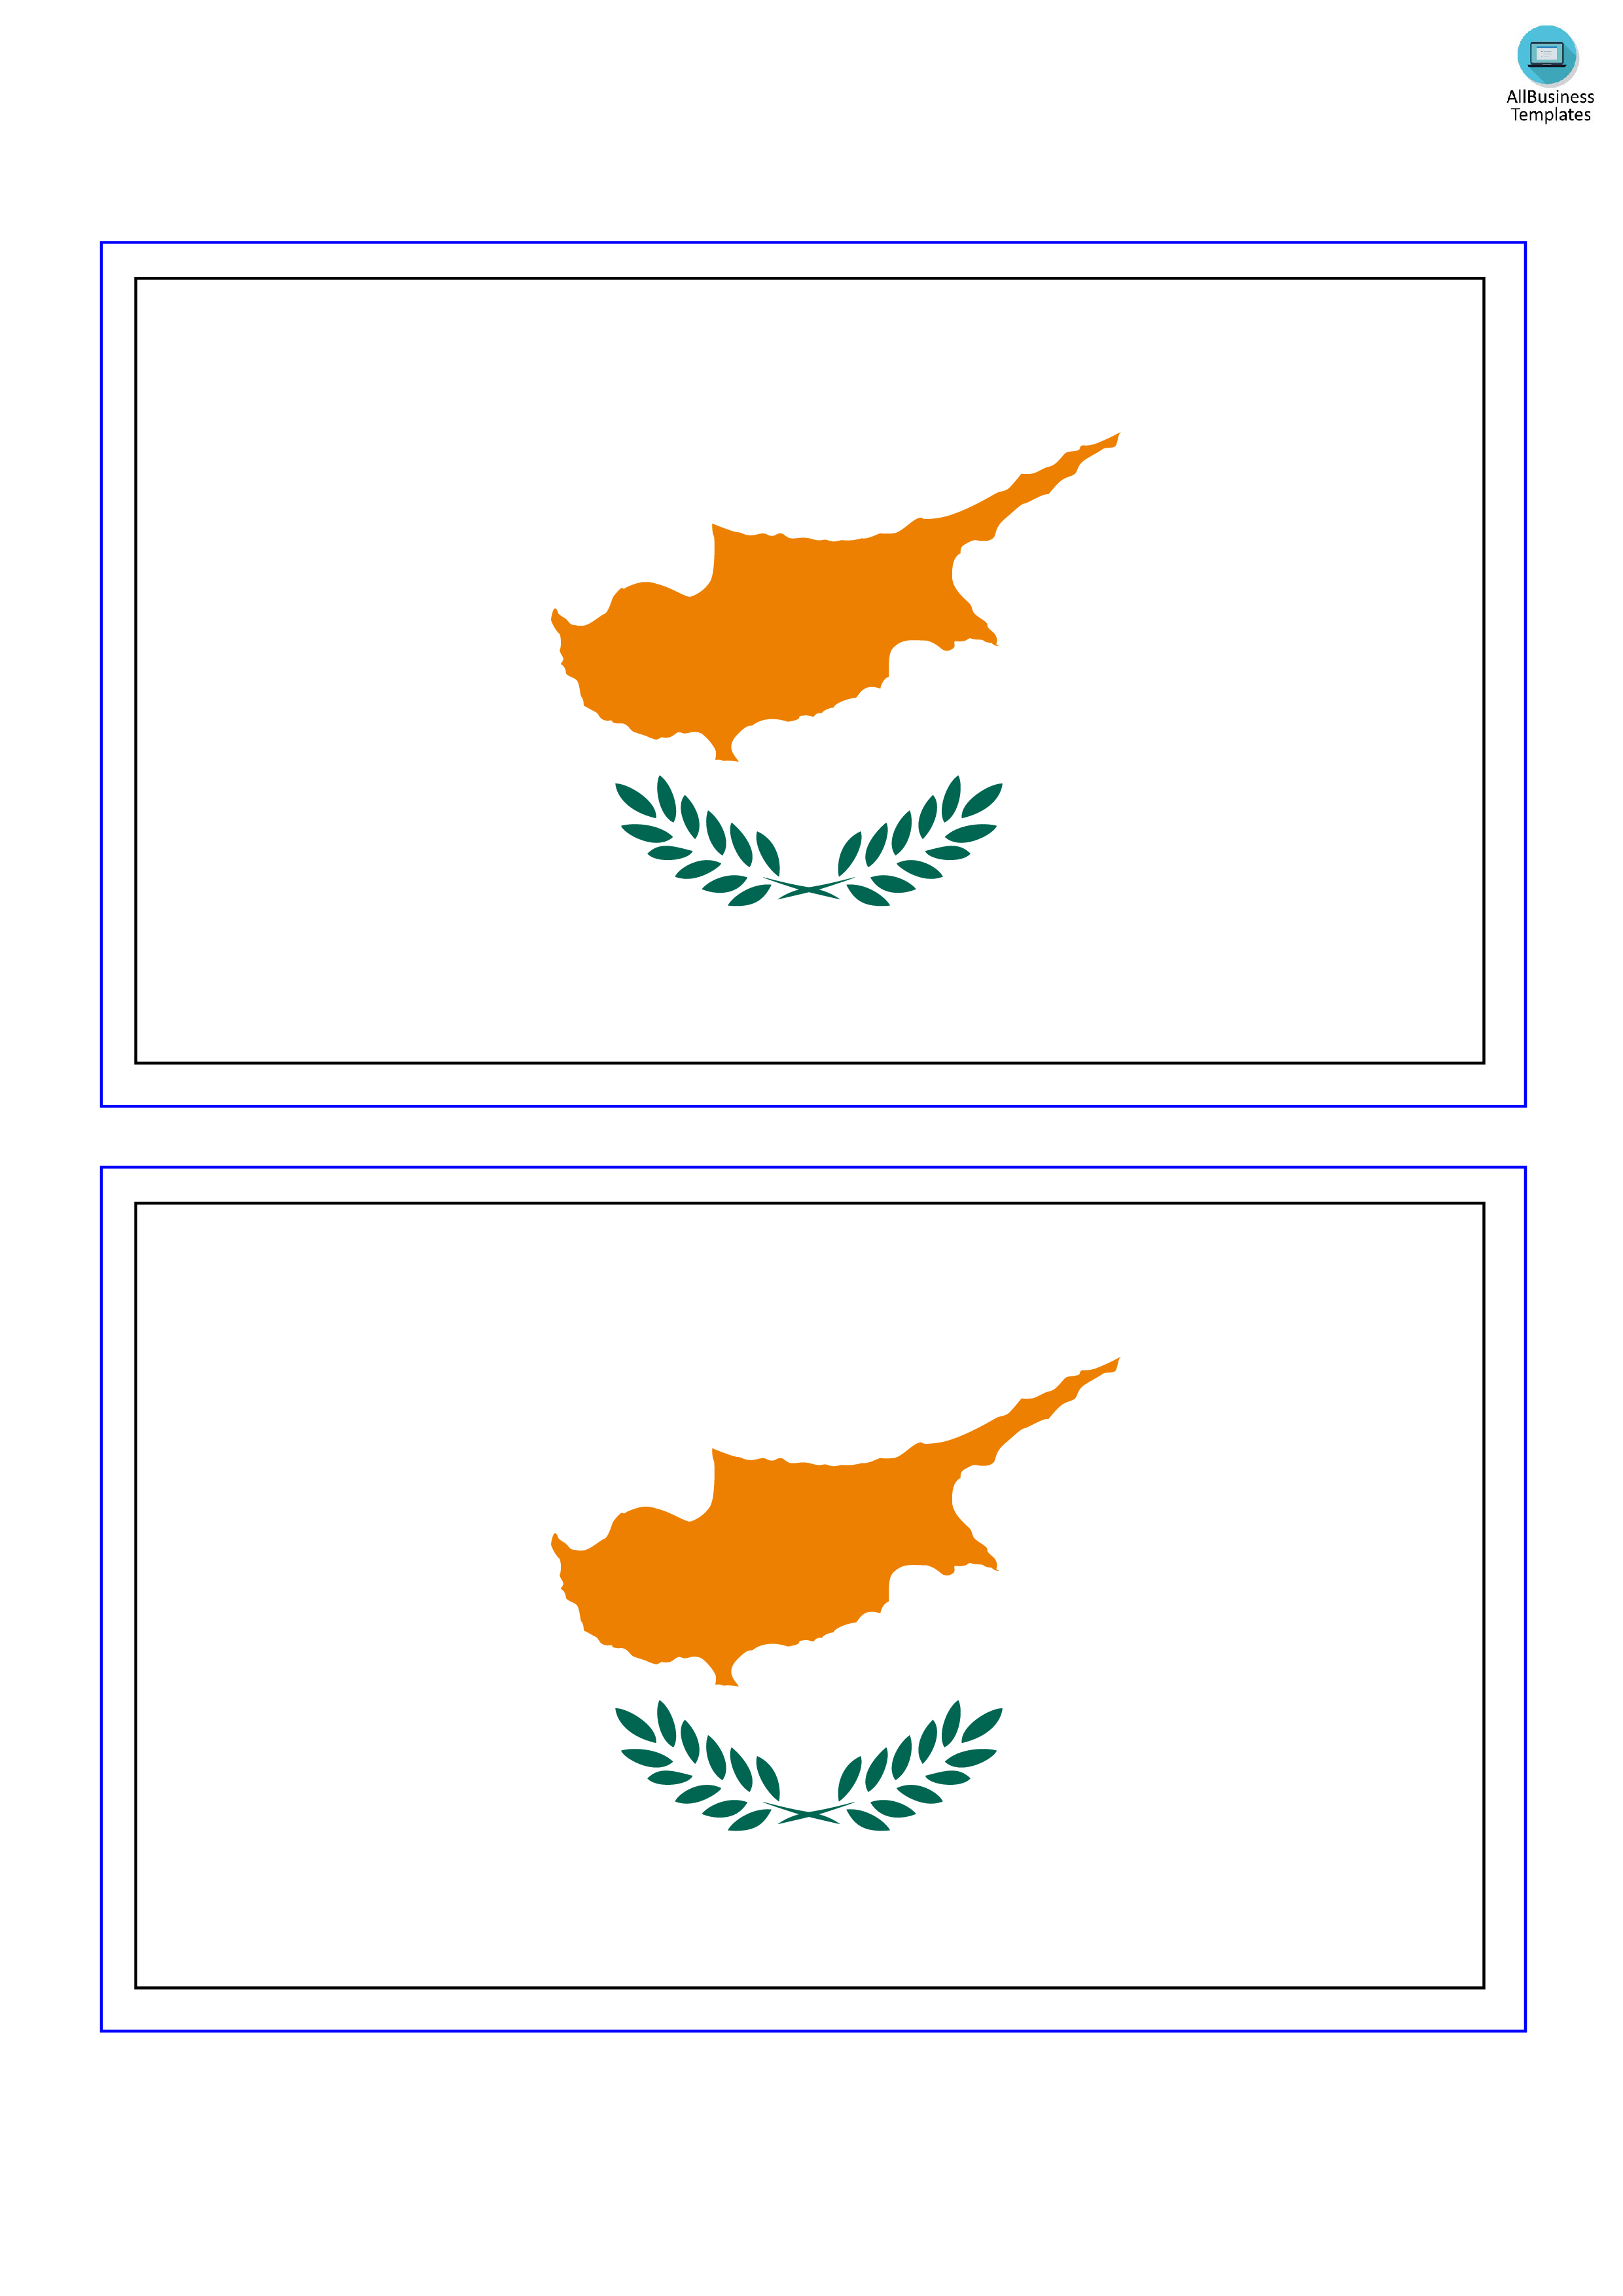 cyprus flag plantilla imagen principal